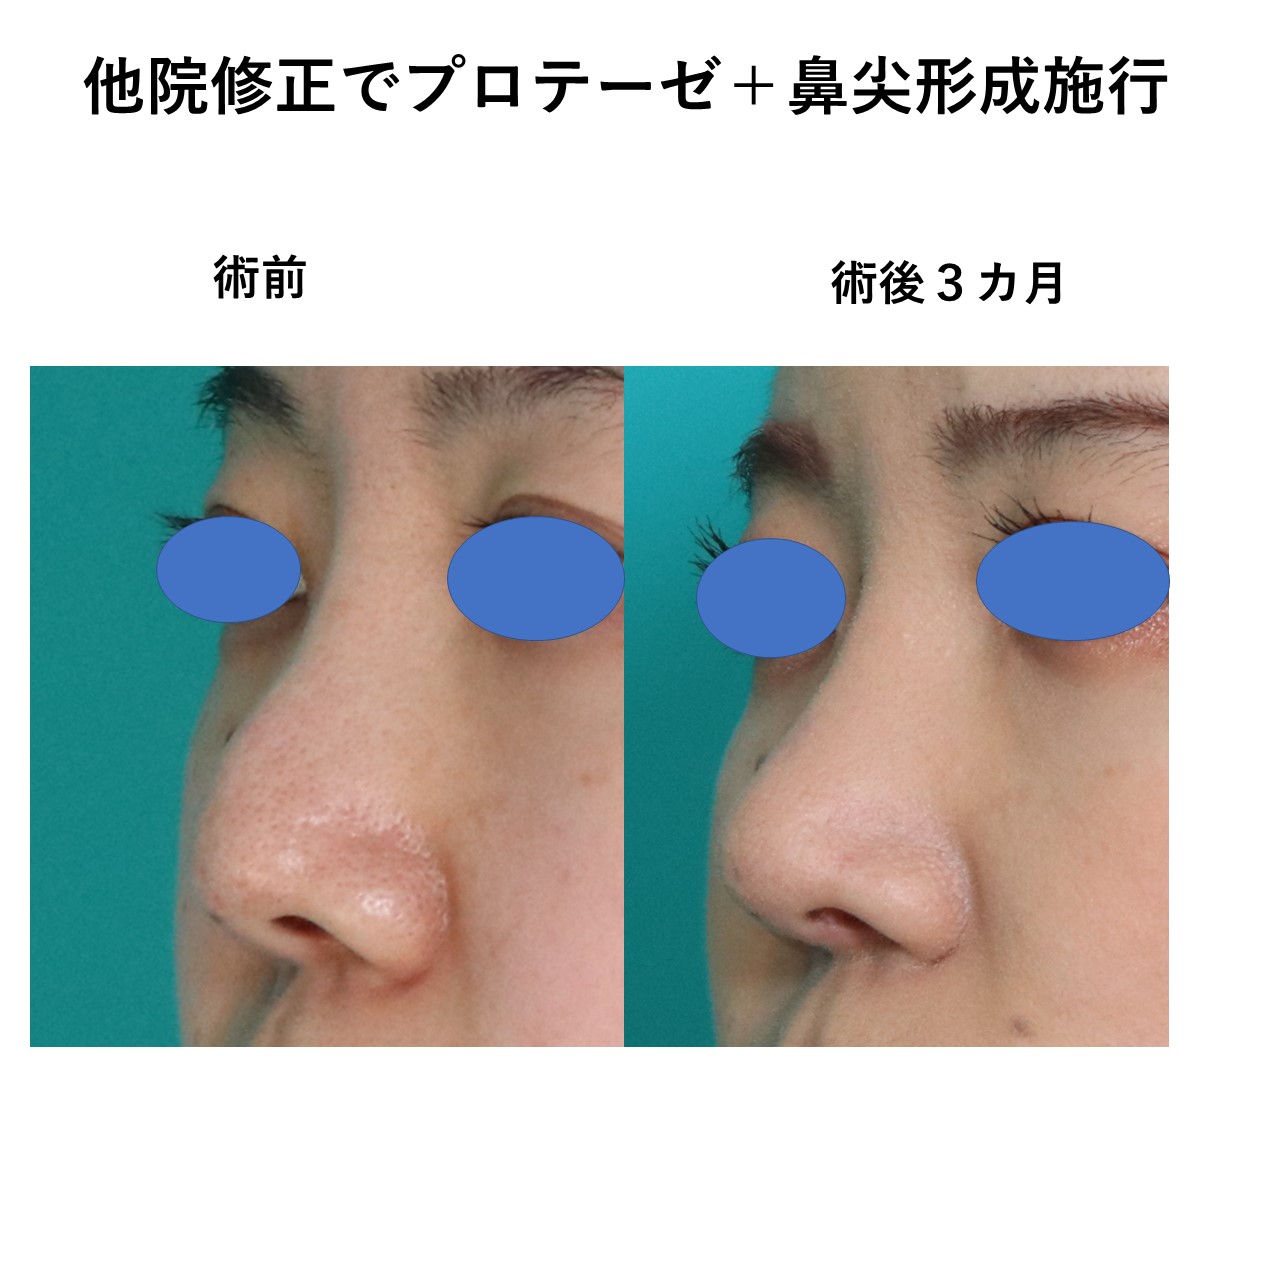 鼻の他院修正プロテーゼ入れ替えと鼻尖形成施術前後イメージ